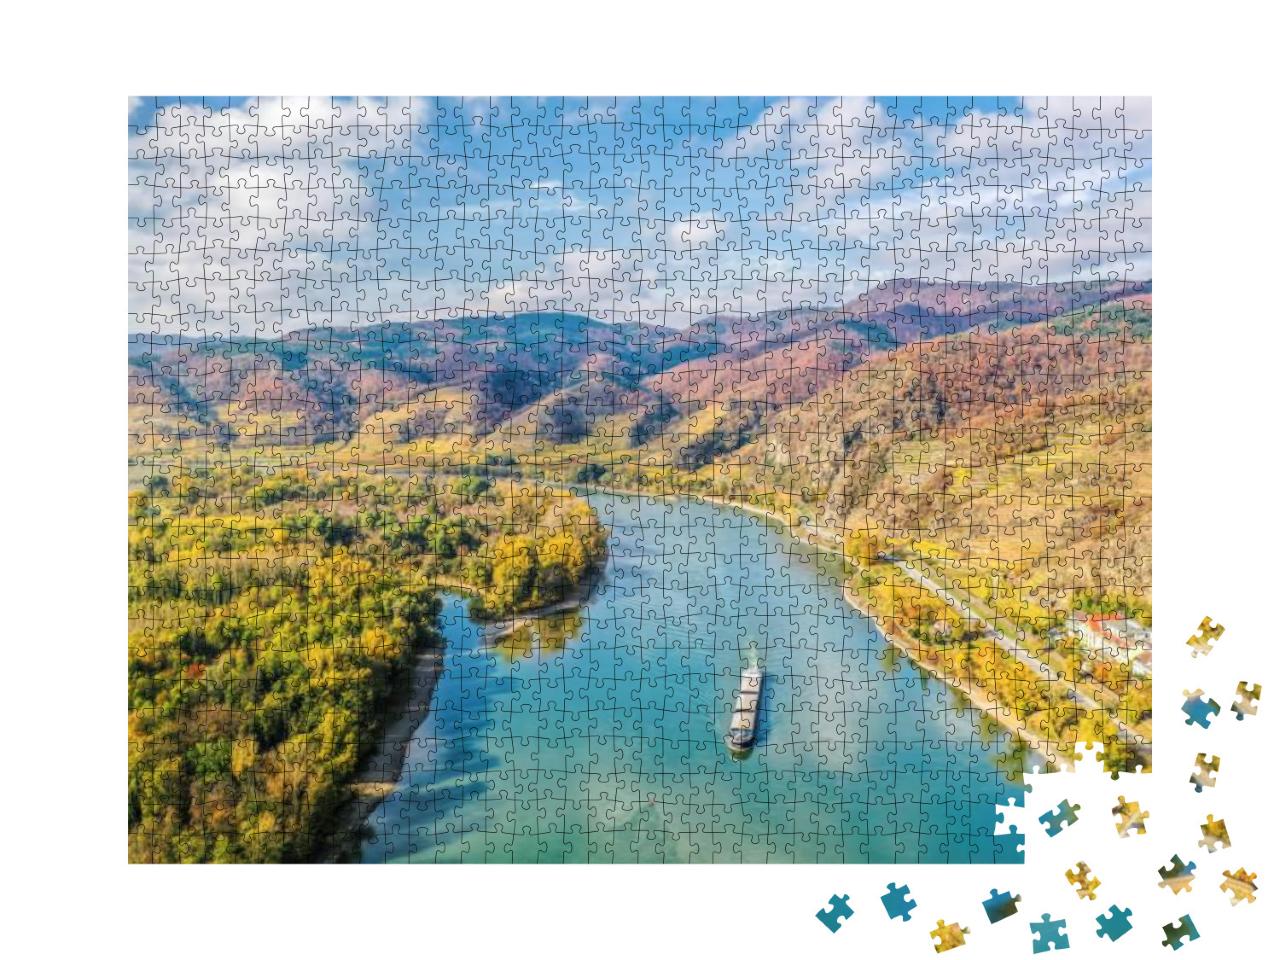 Puzzle 1000 Teile „Panorama des Wachautals mit Schiff auf der Donau“